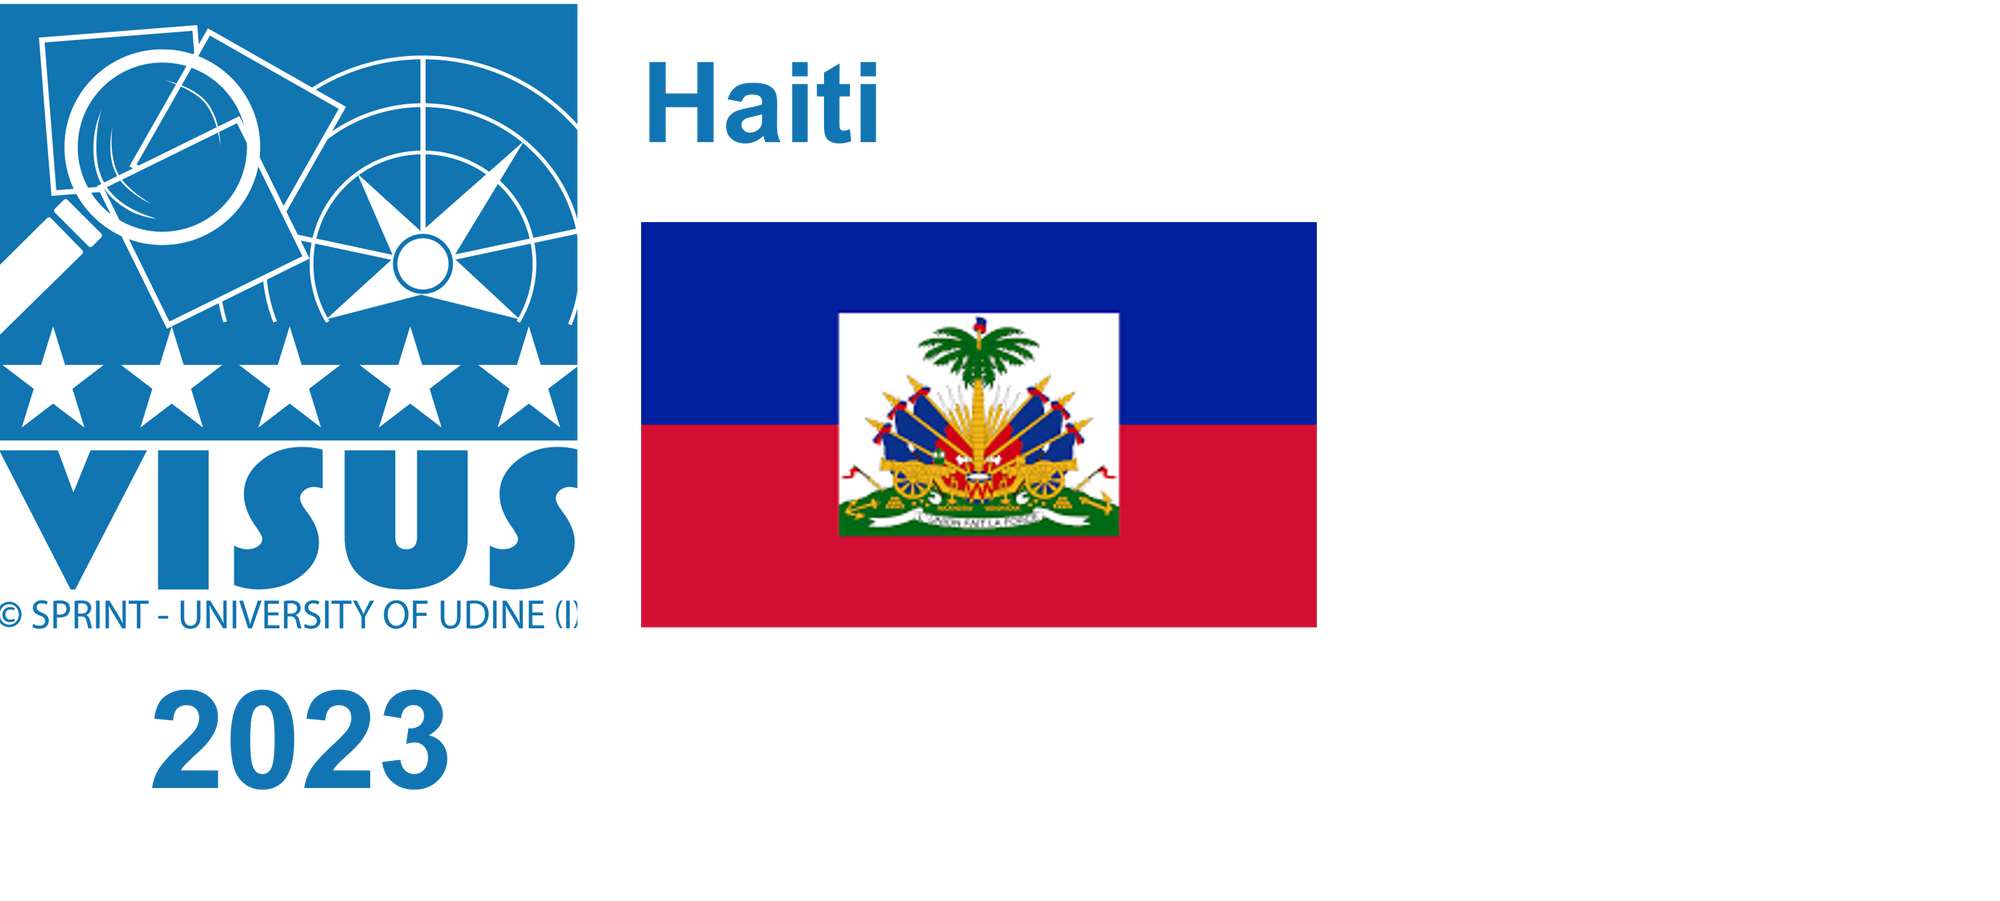 Haiti, 2023